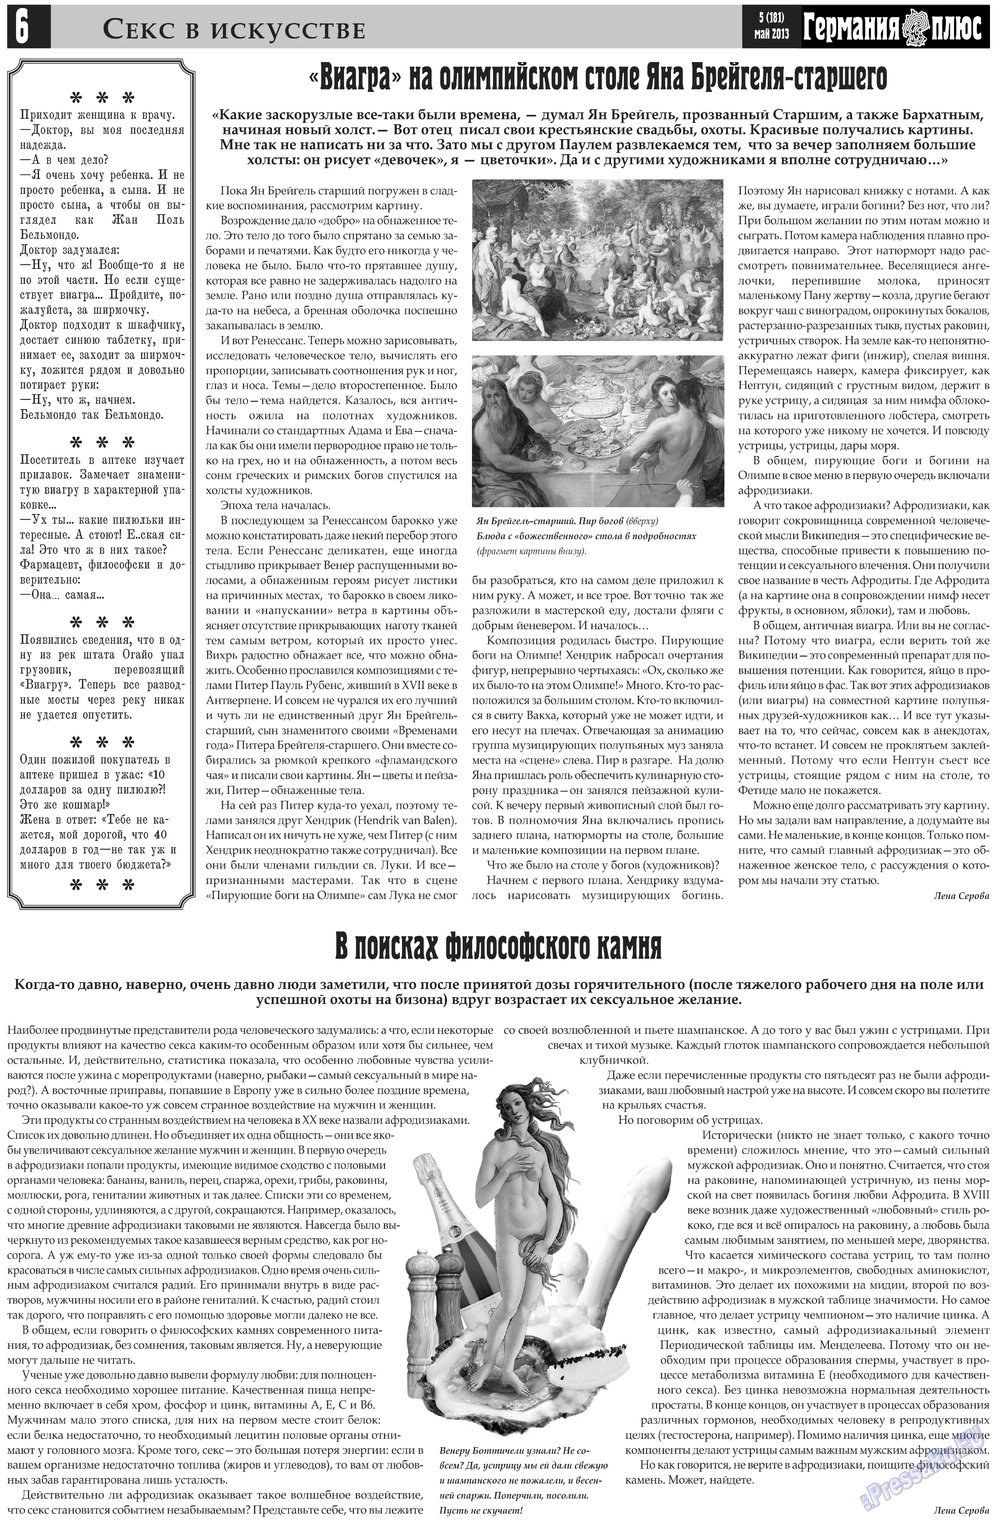 Германия плюс (газета). 2013 год, номер 5, стр. 6